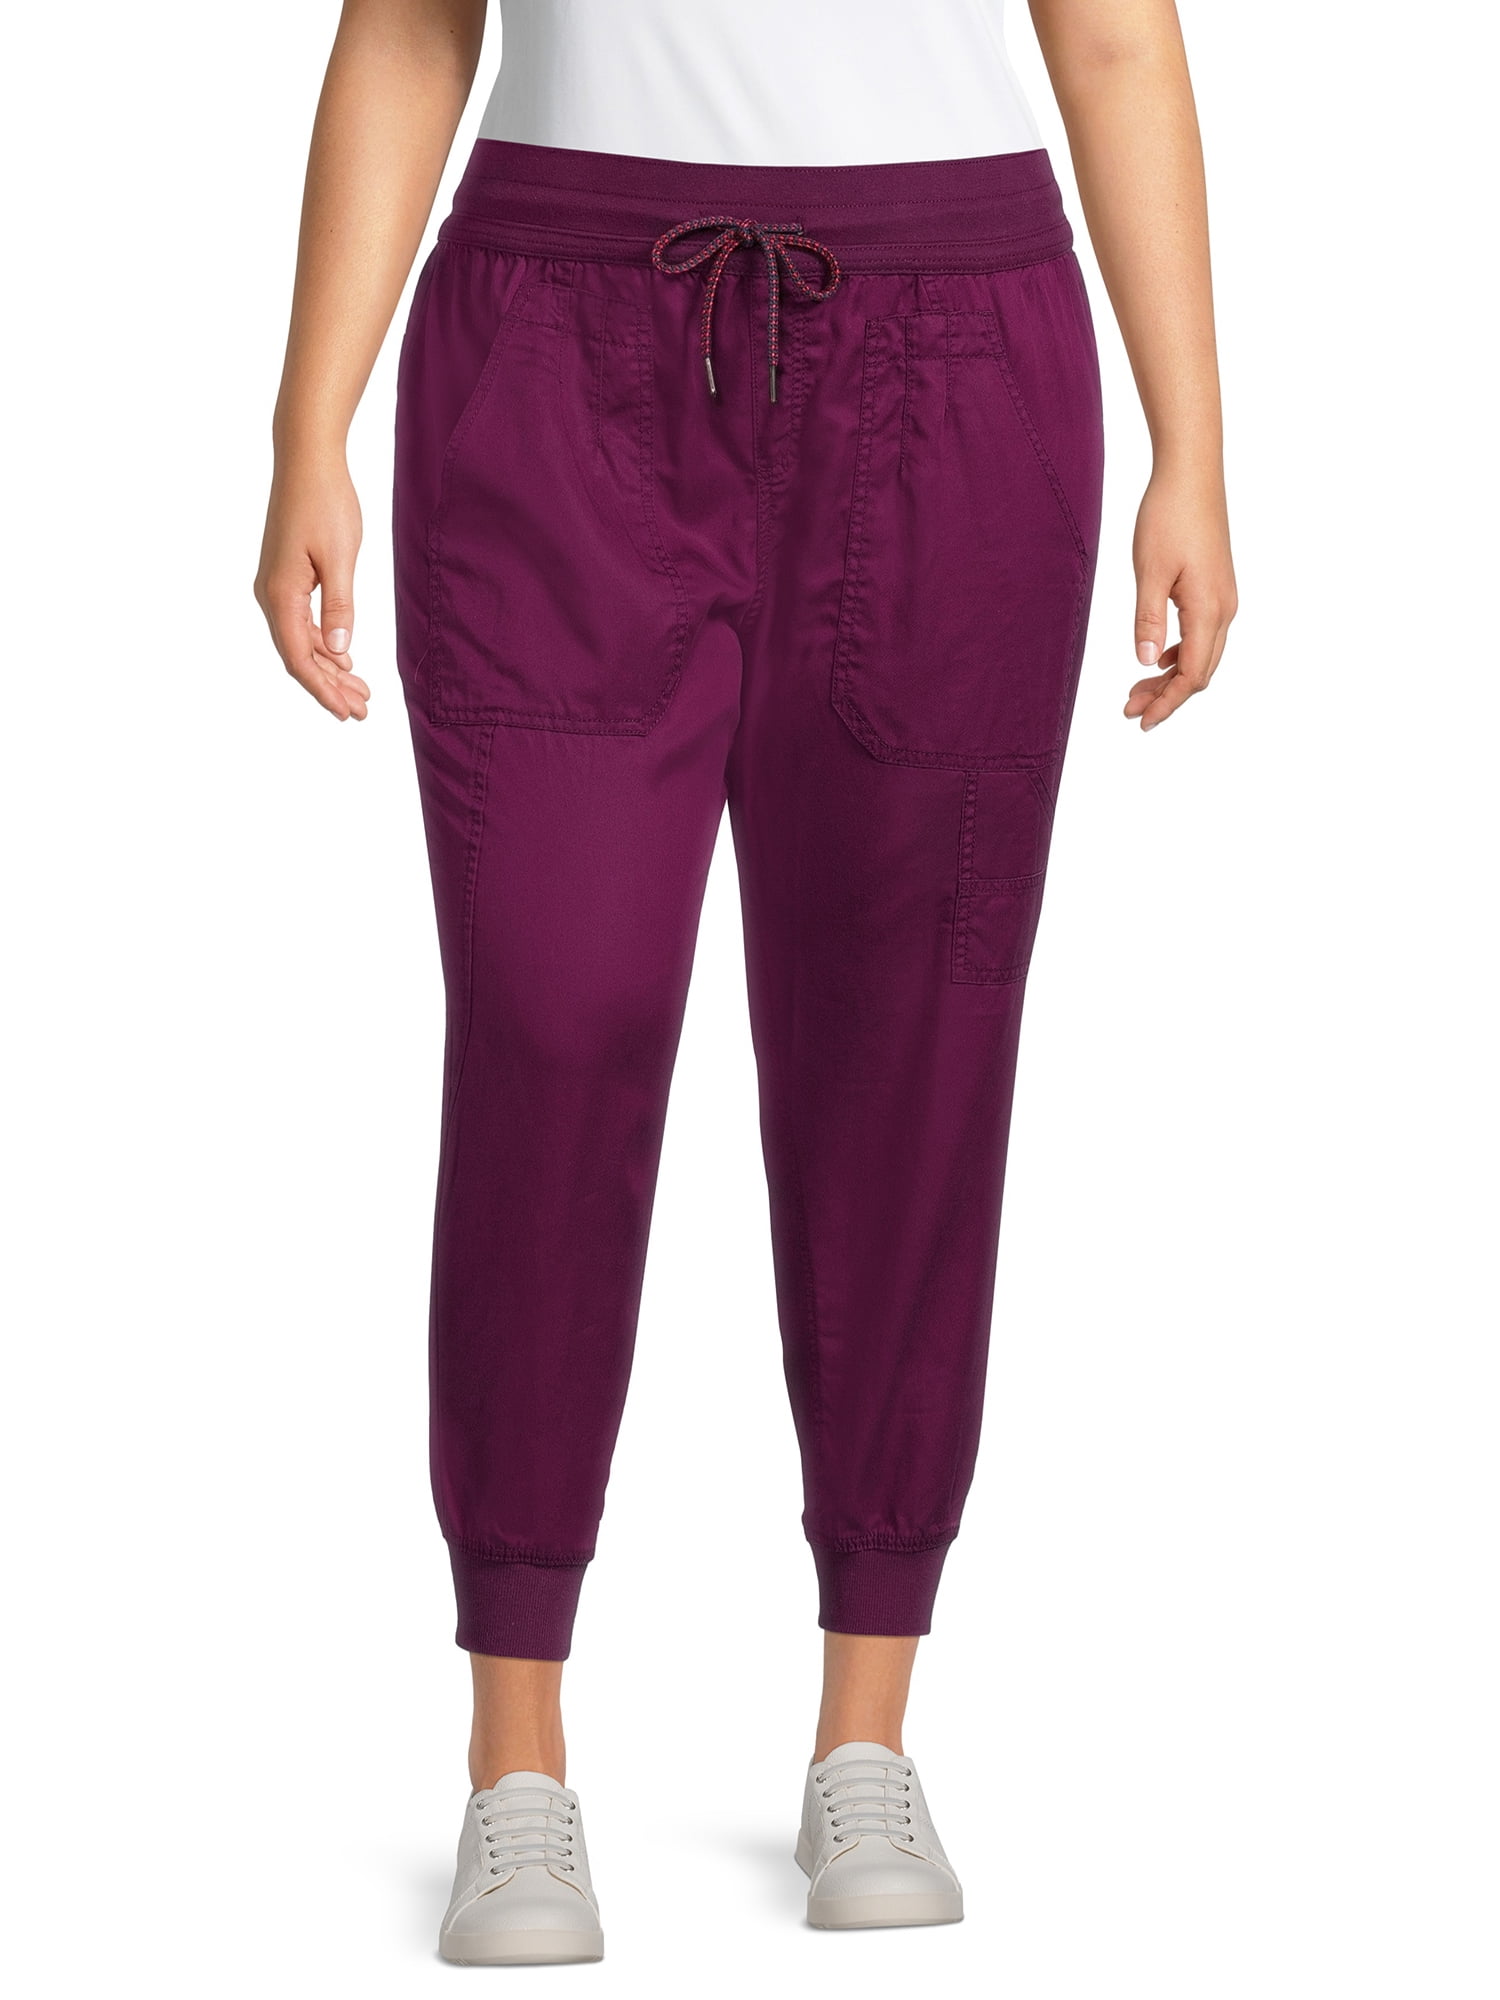 NEW Terra & Sky Women's Plus Size Purple Jeggings Pants Size 4X (28W-30W)  NWT